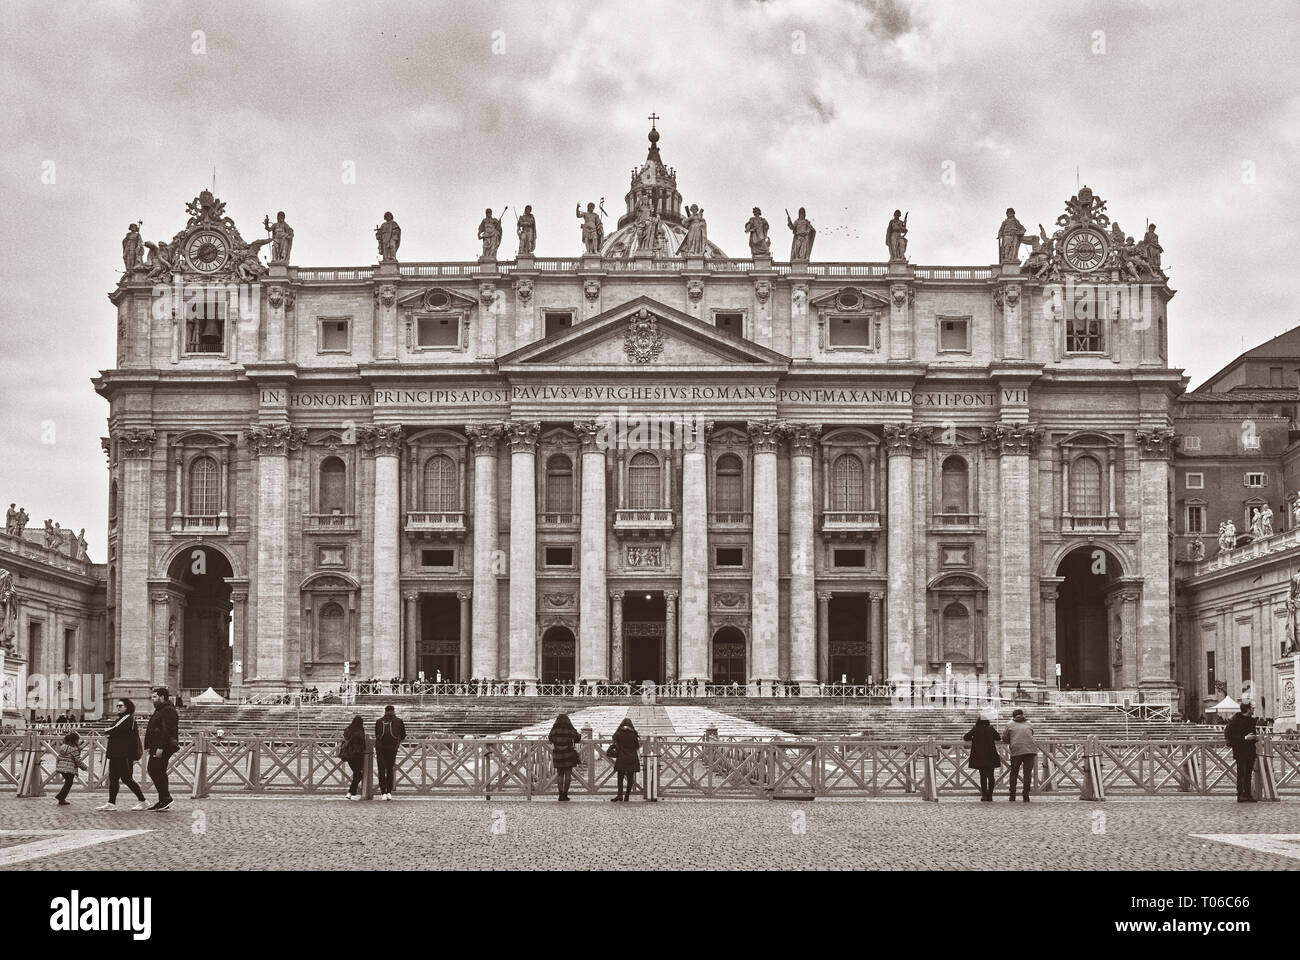 Italia, Roma, 19 febbraio/ 2018, Basilica di San Pietro in Vaticano, ai turisti di ammirare la Basilica, la fotografia in bianco e nero in un giorno nuvoloso Foto Stock